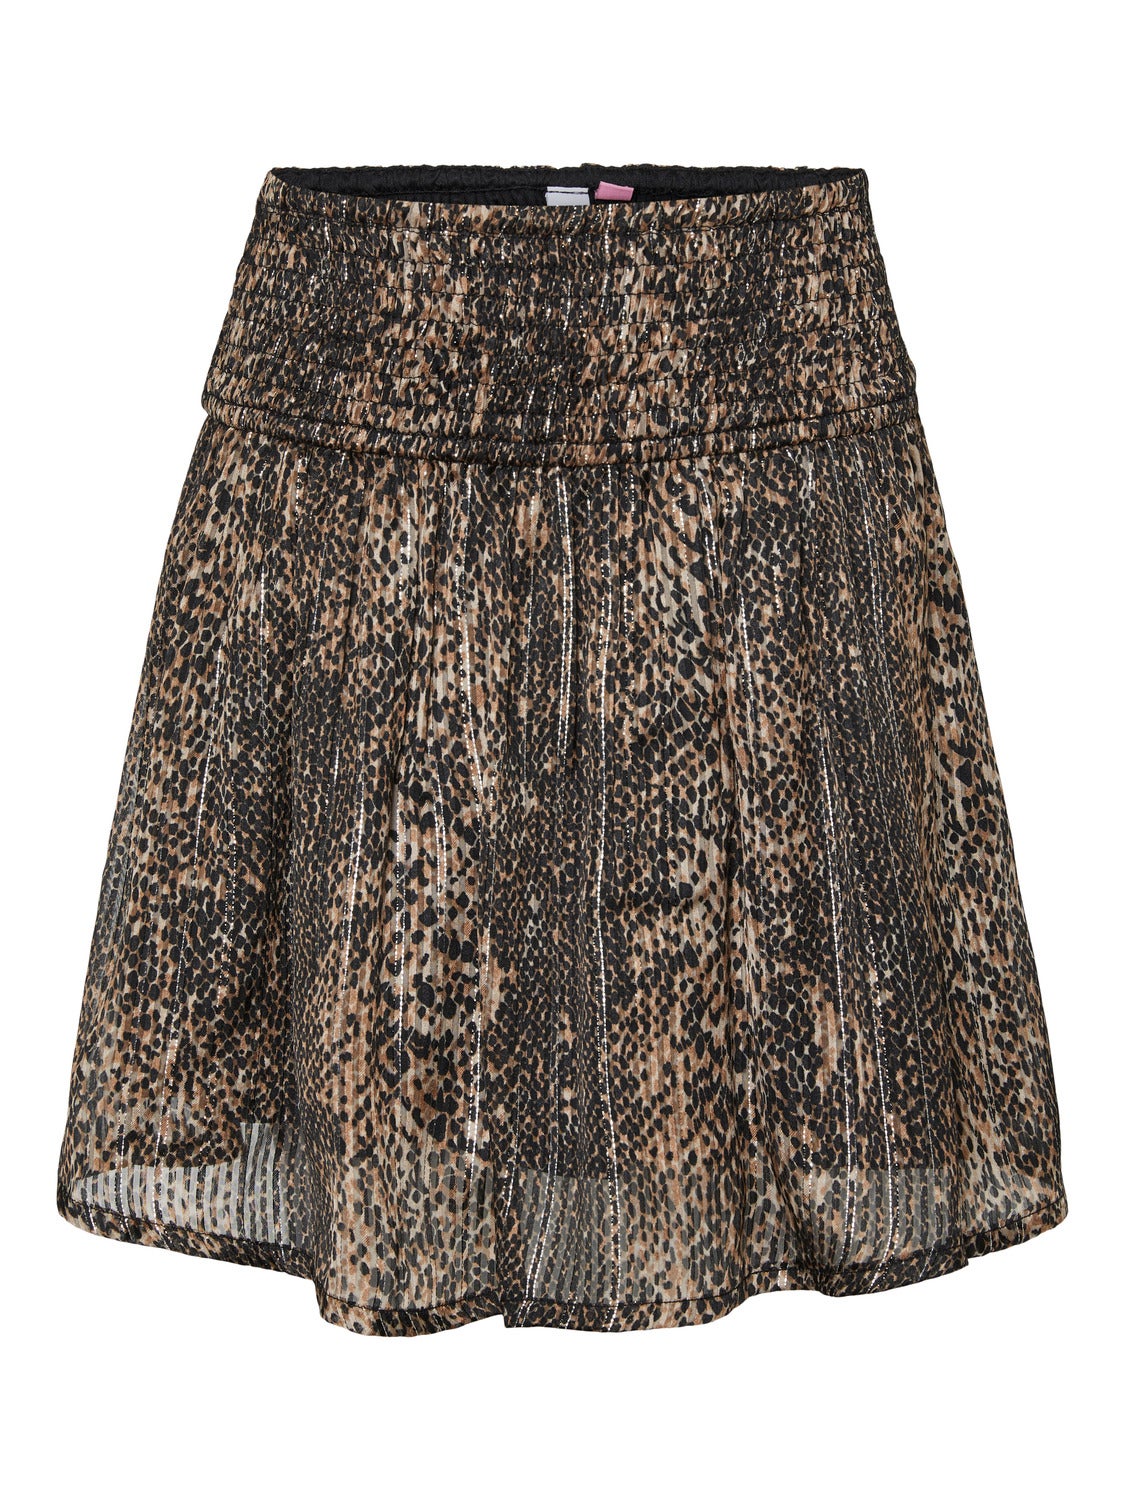 VMNALA Short skirt